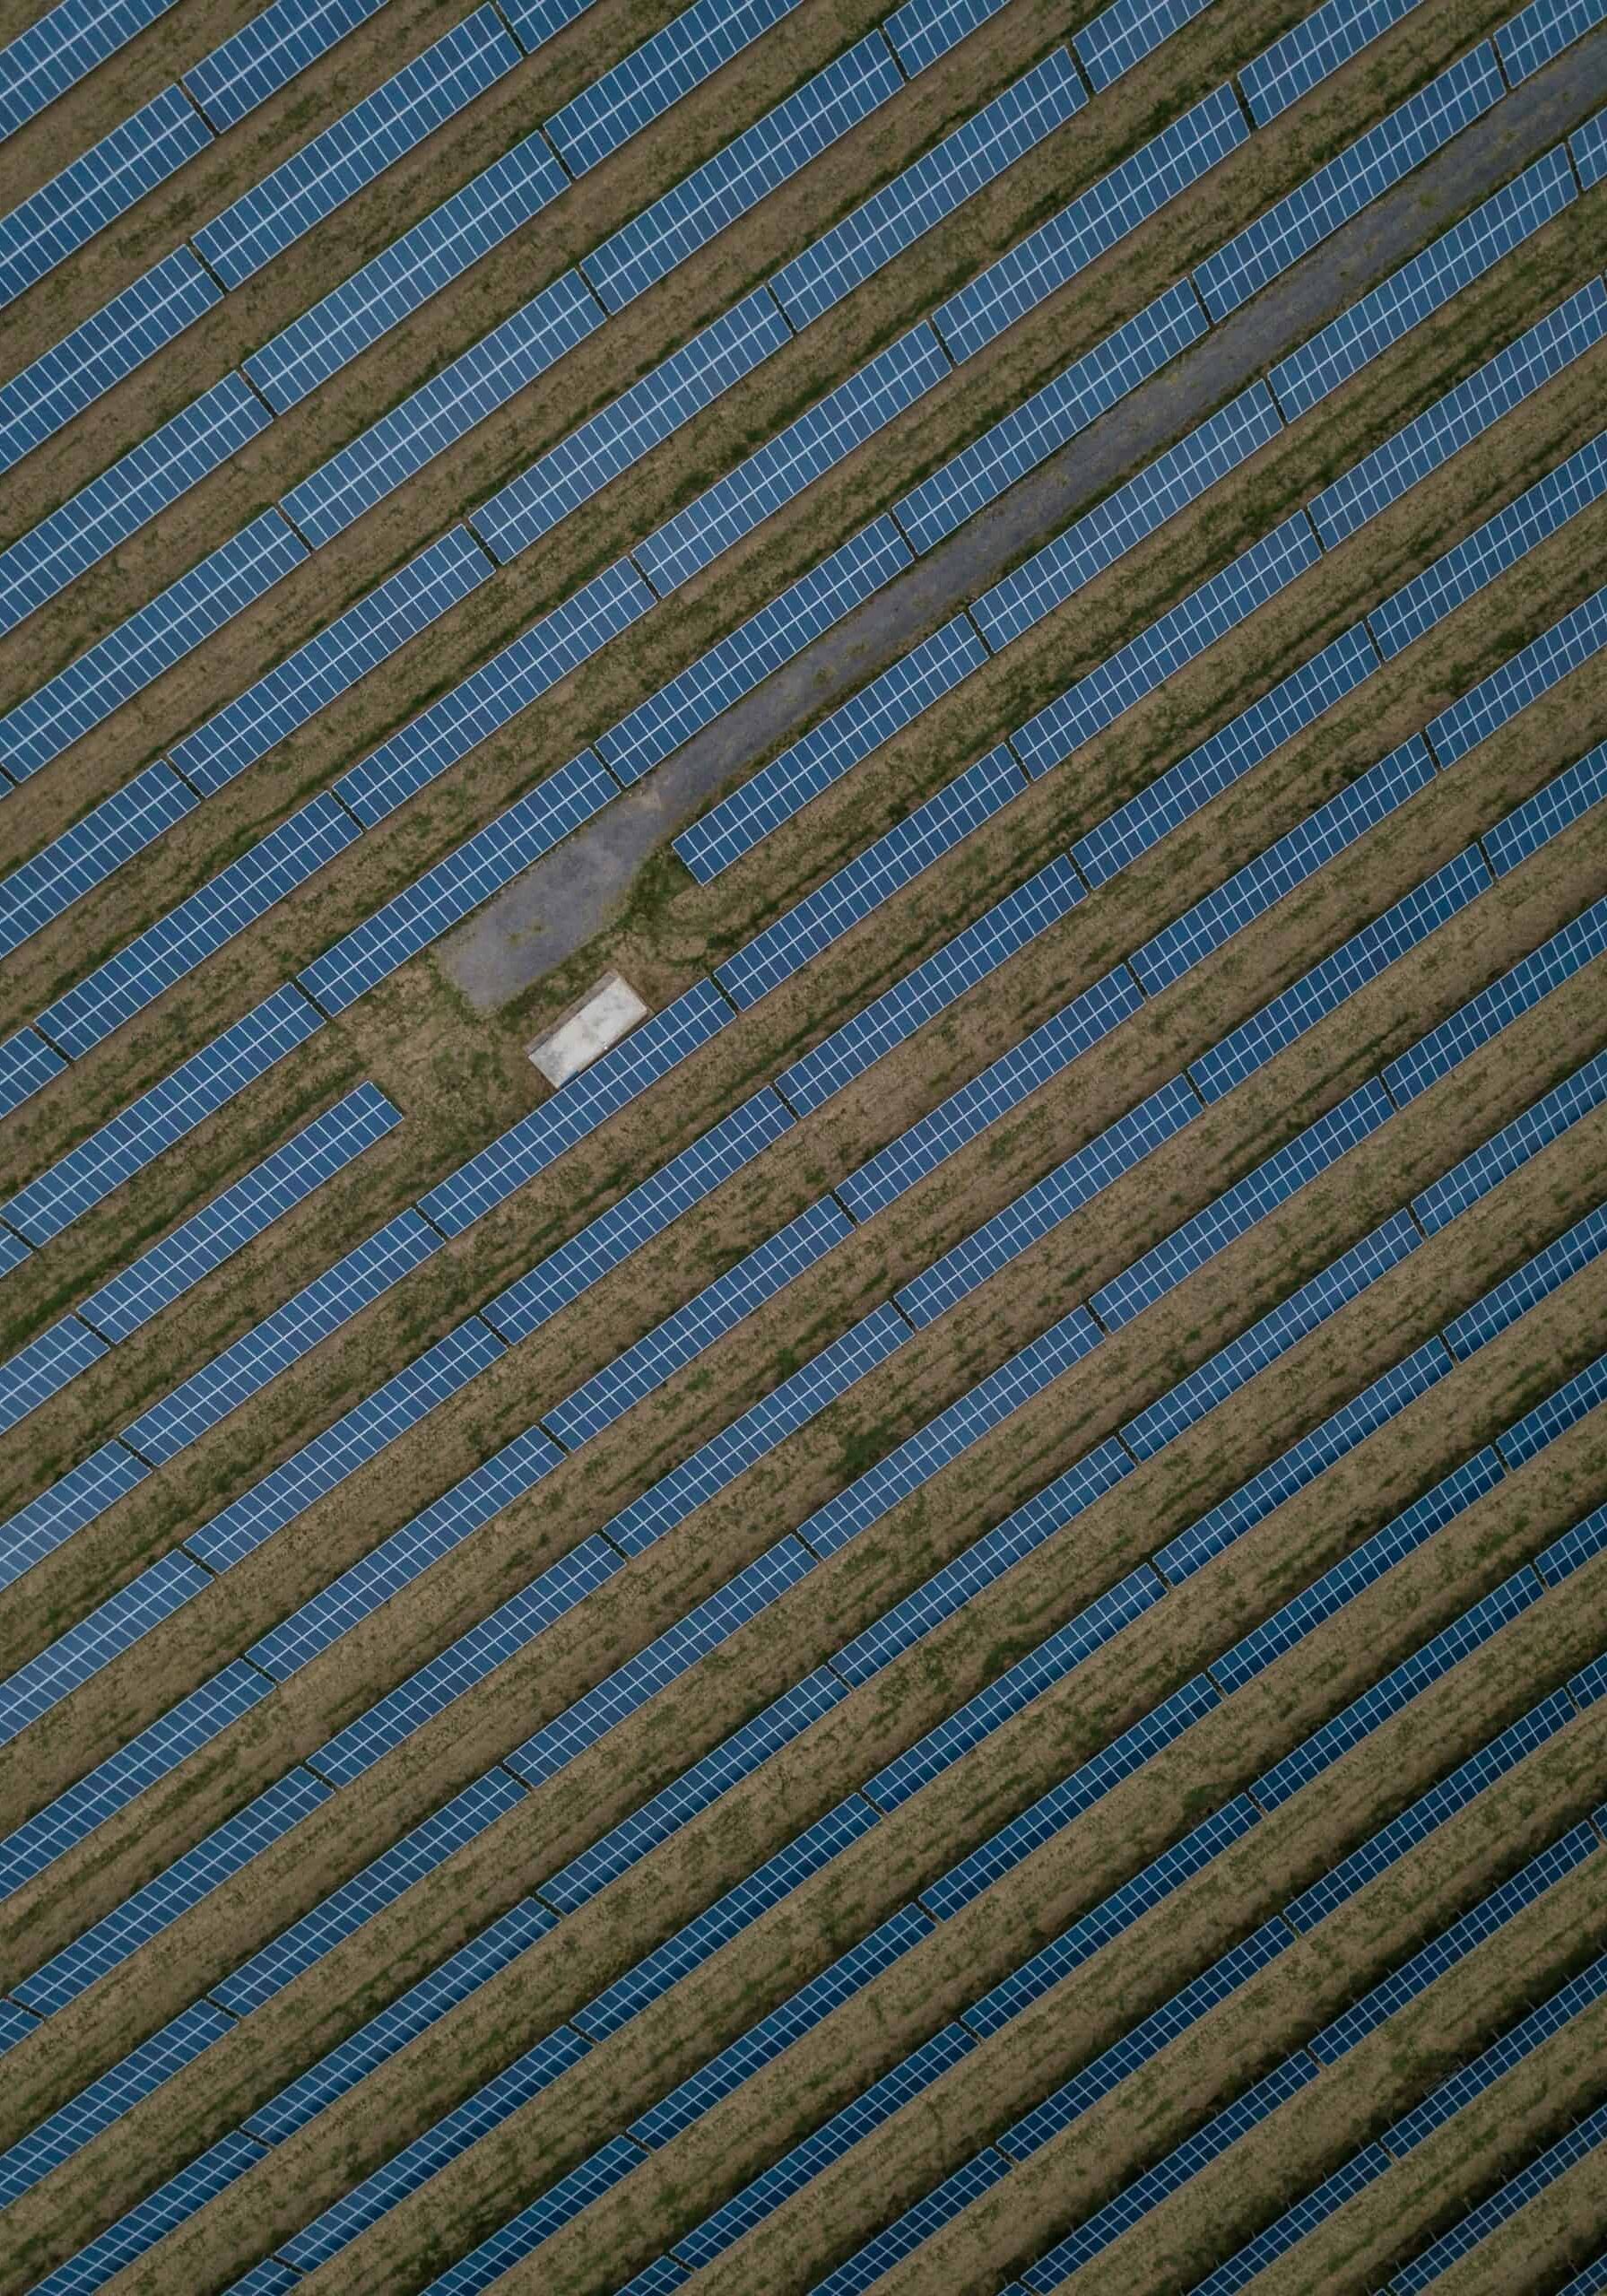 Overhead shot of a solar farm